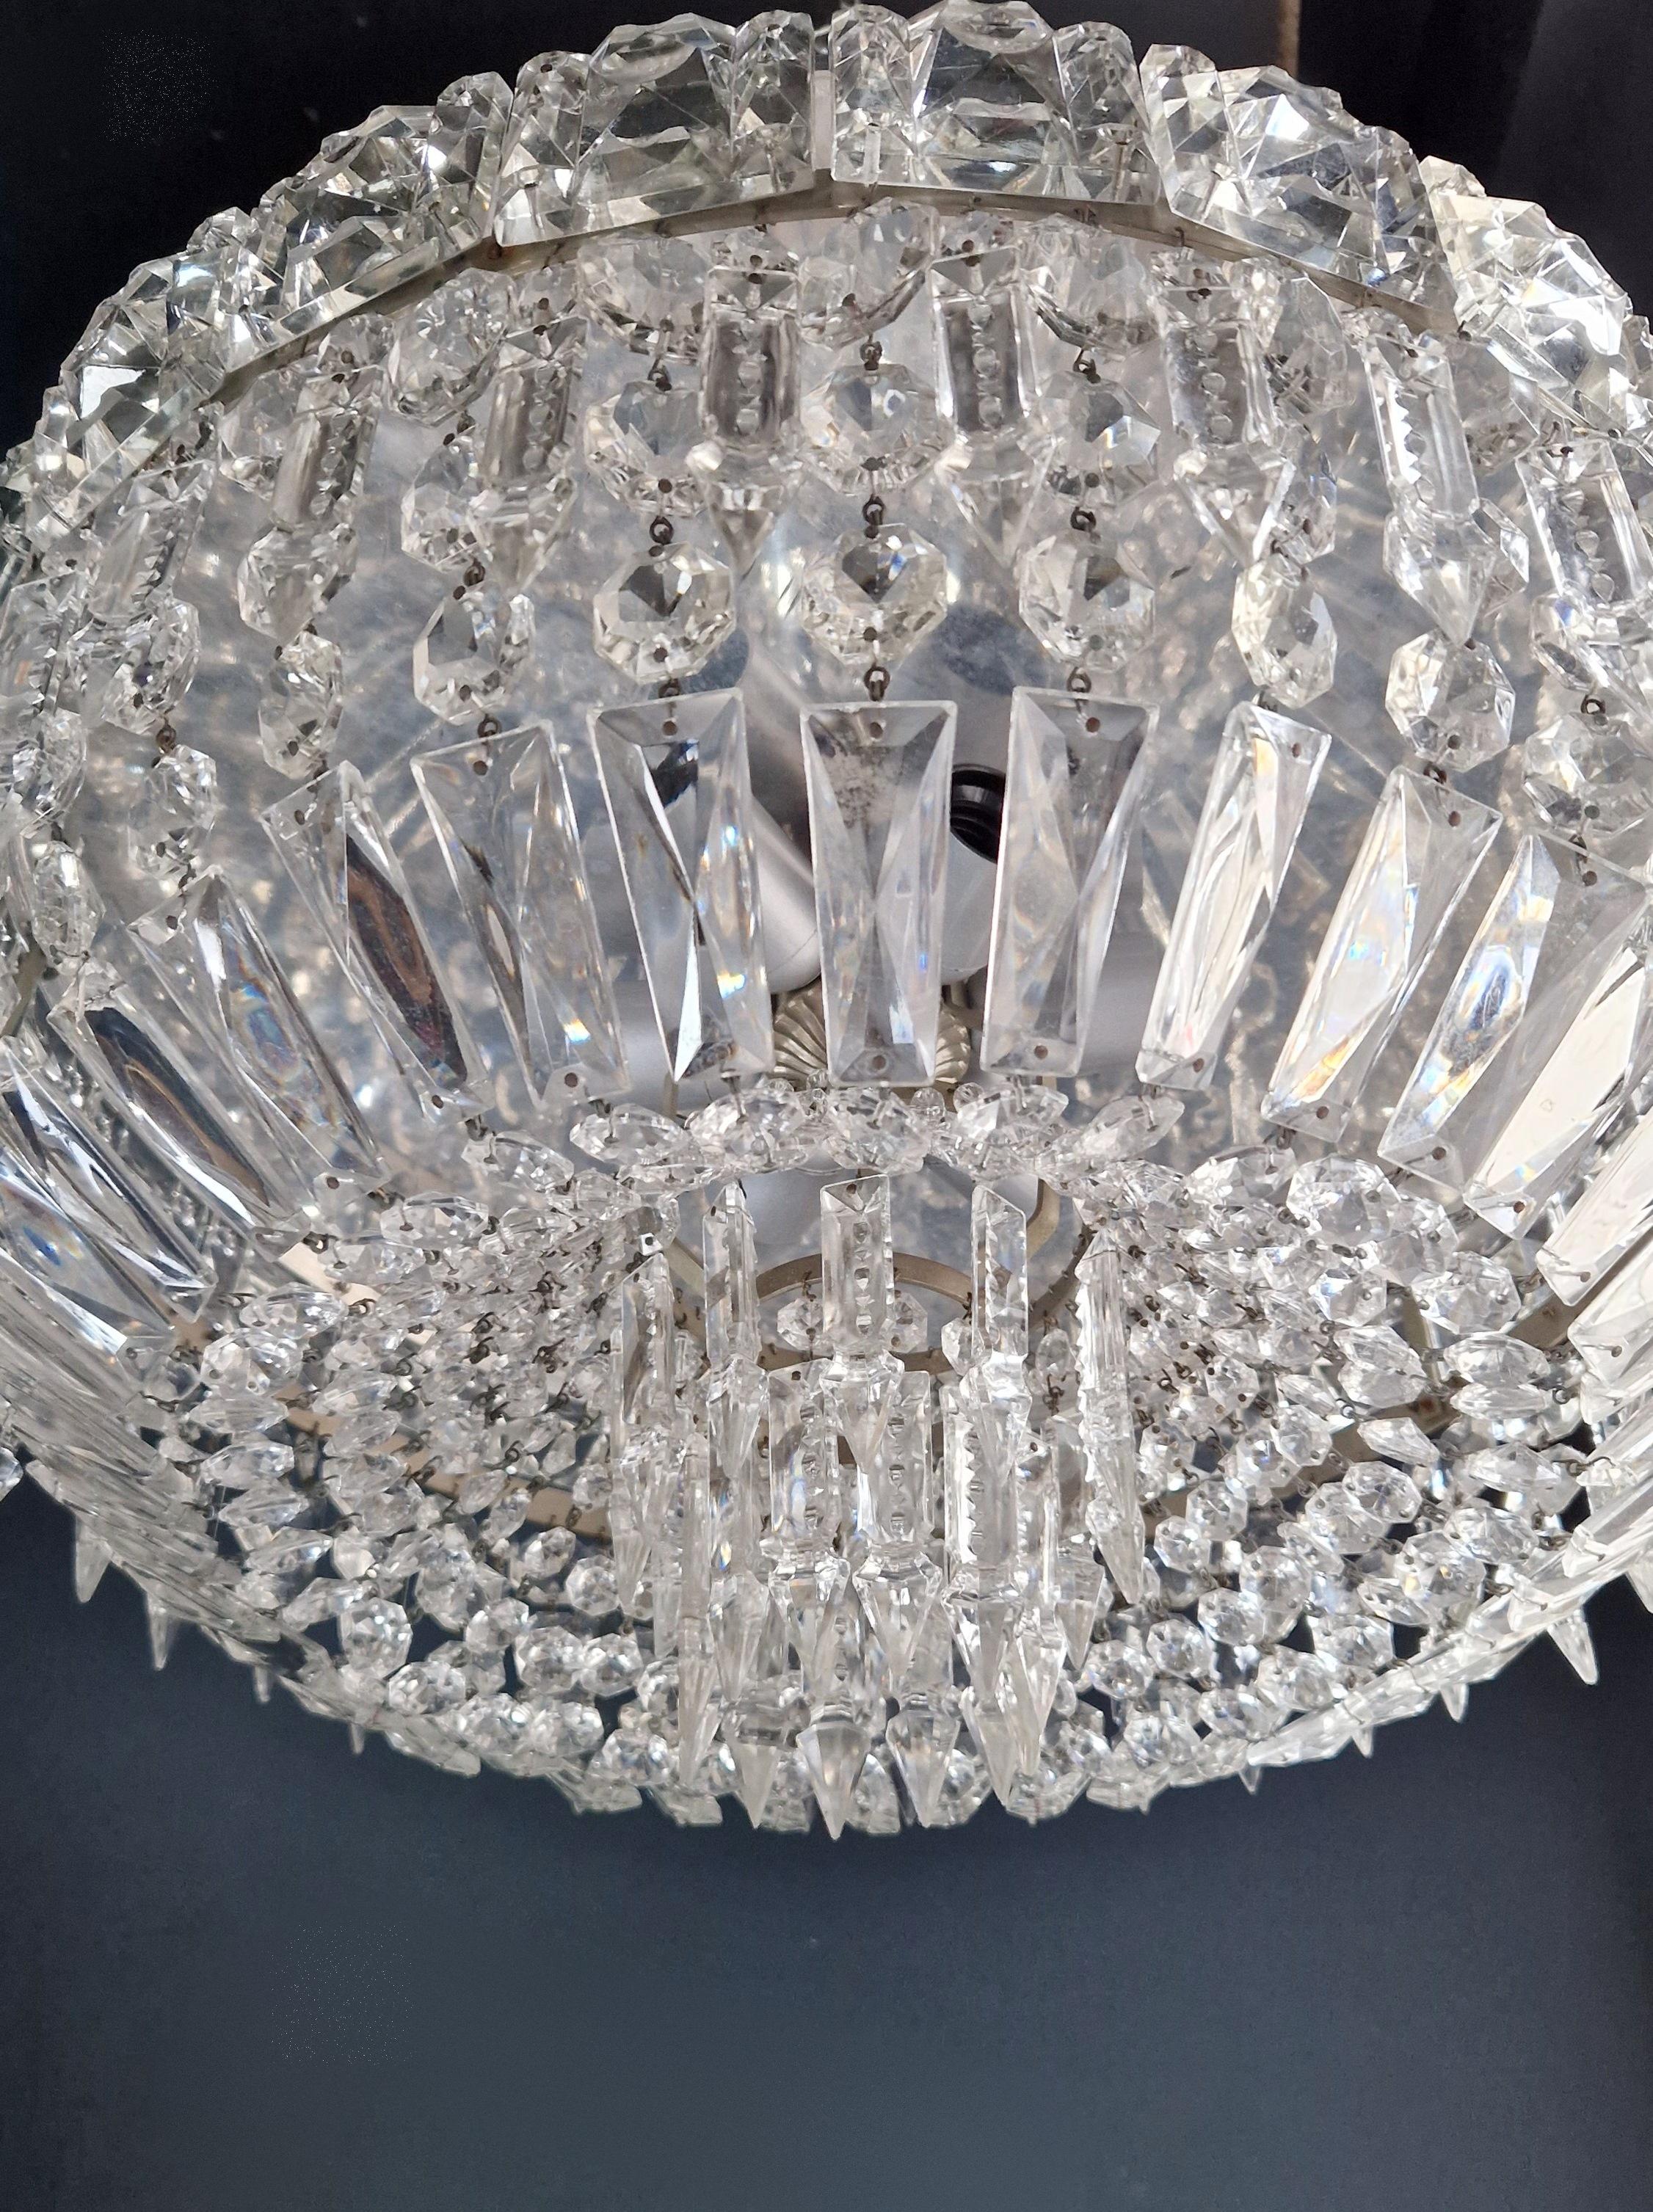 European Art Deco Low Plafonnier Silver Crystal Chandelier Lustre Ceiling Lamp Antique For Sale